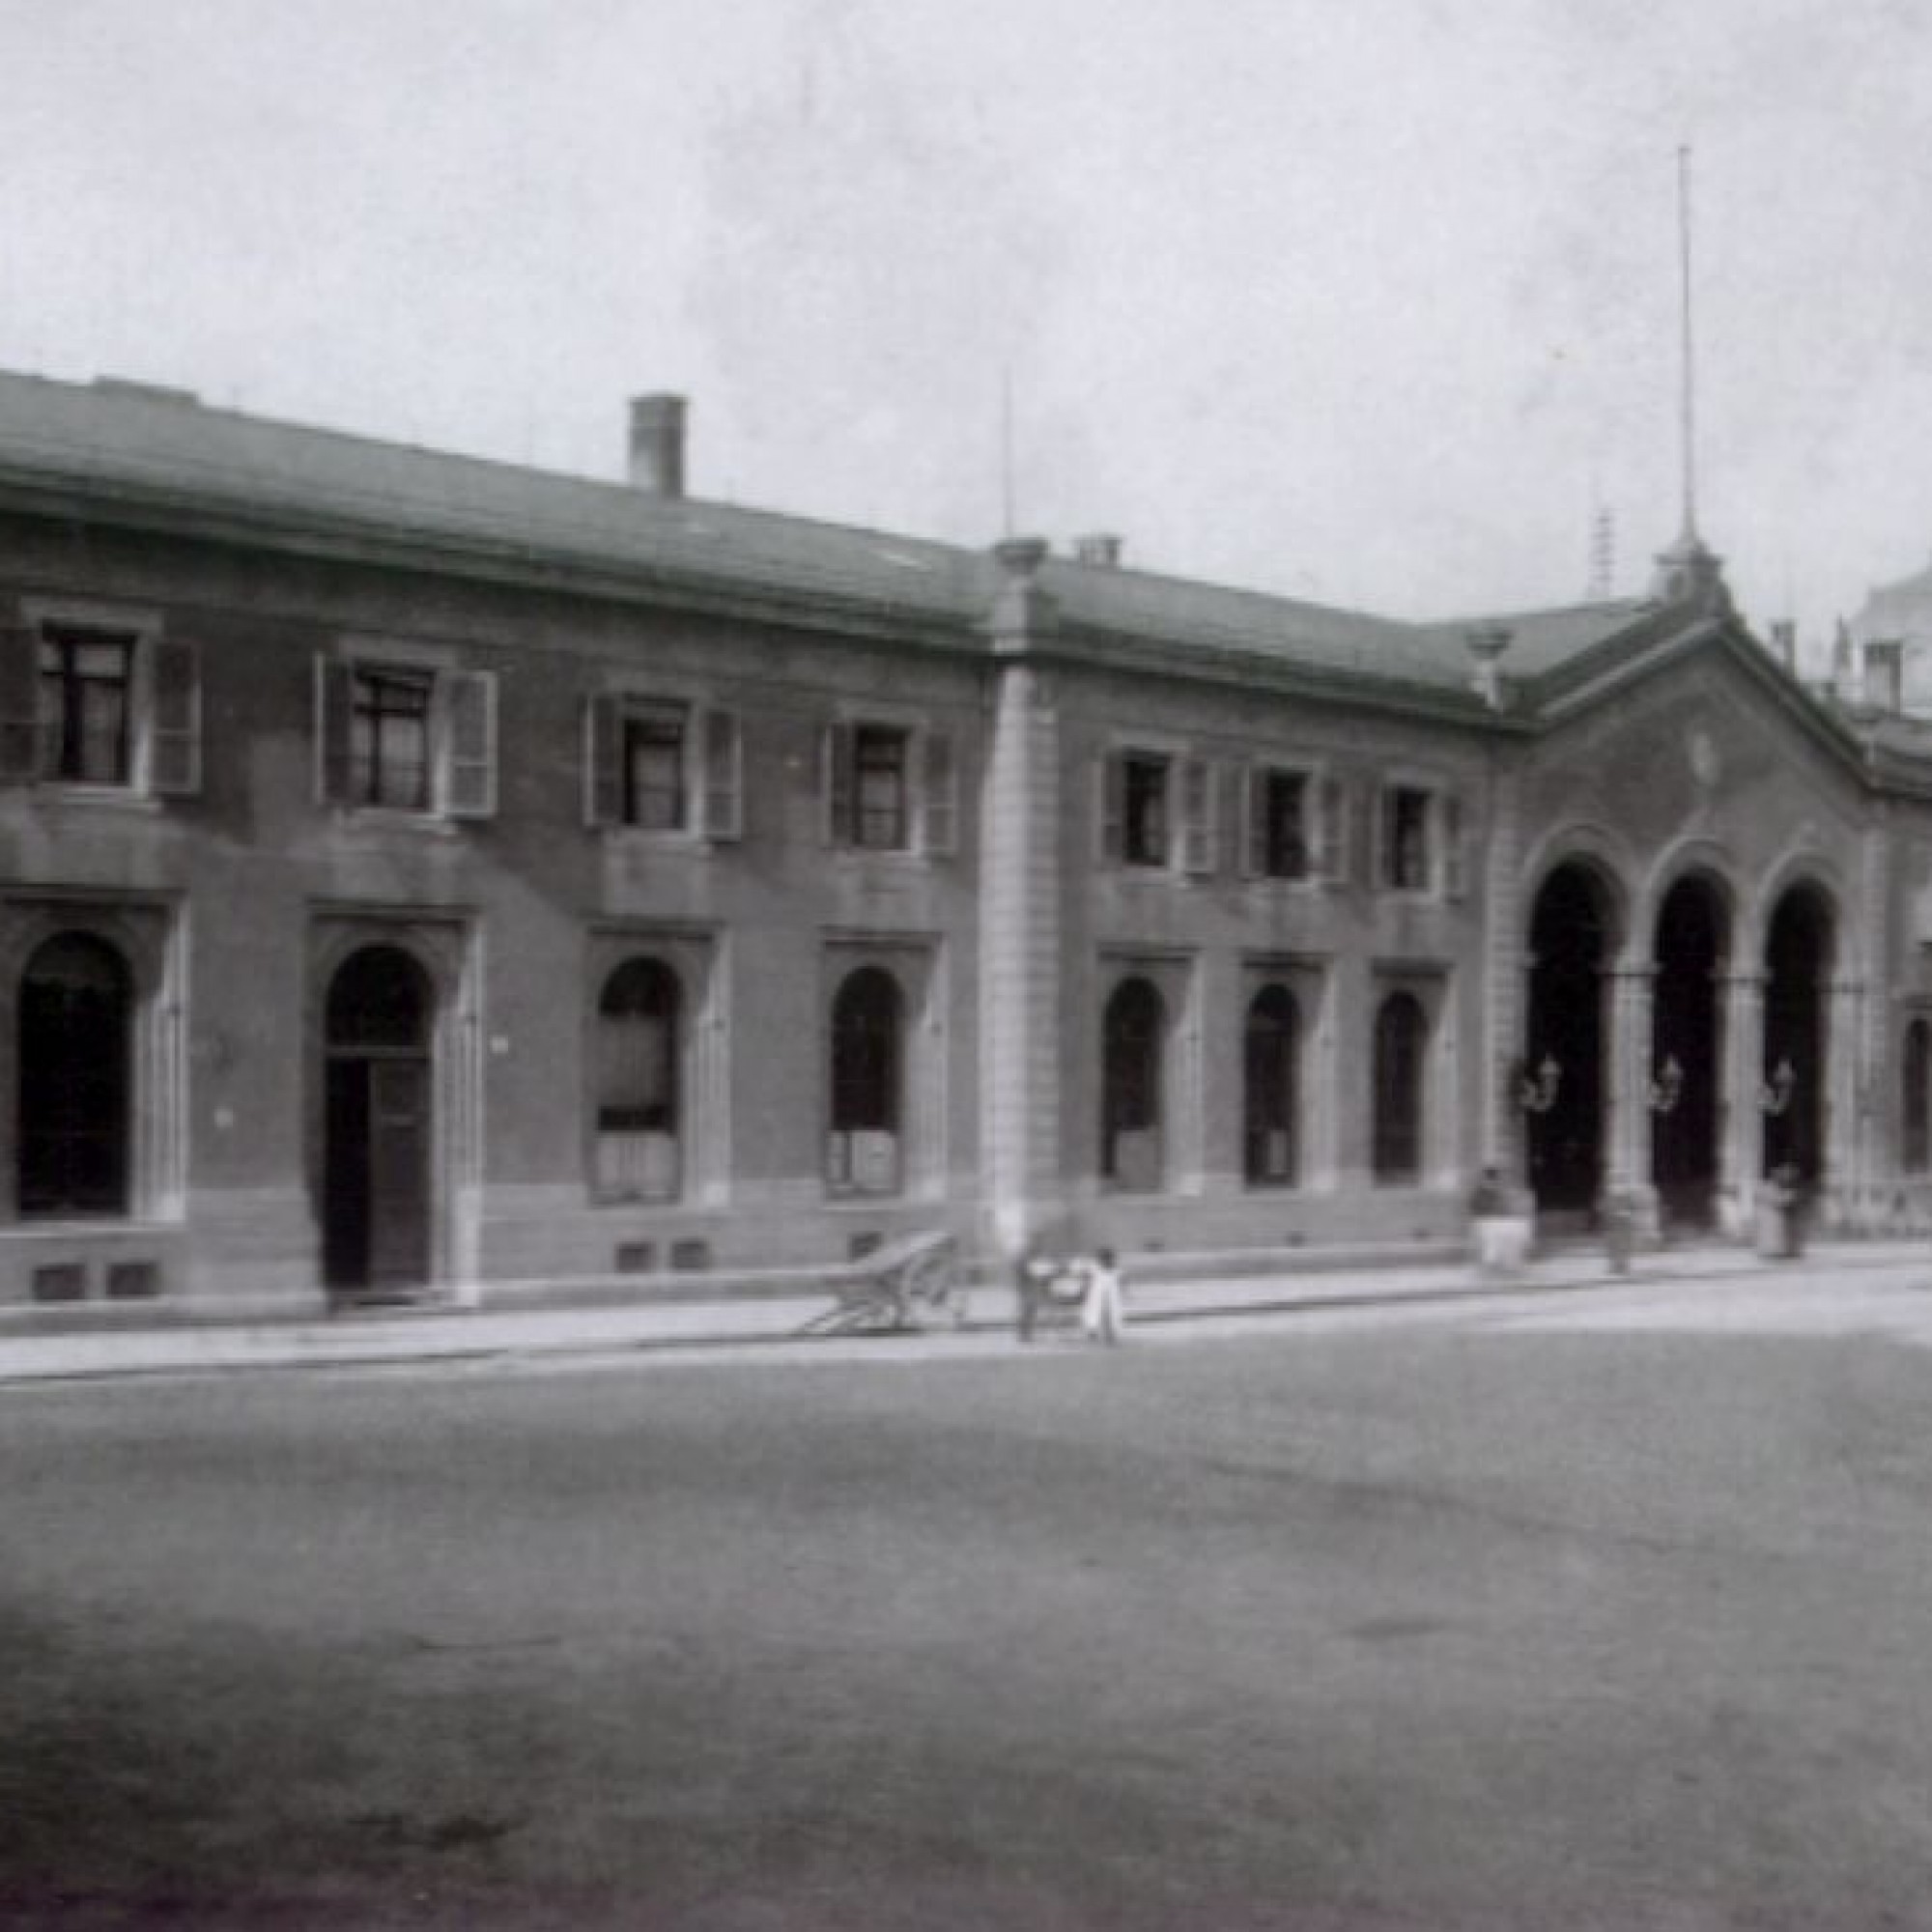 Empfangsgebäude des Kopfbahnhofs Bern im Jahre 1860.